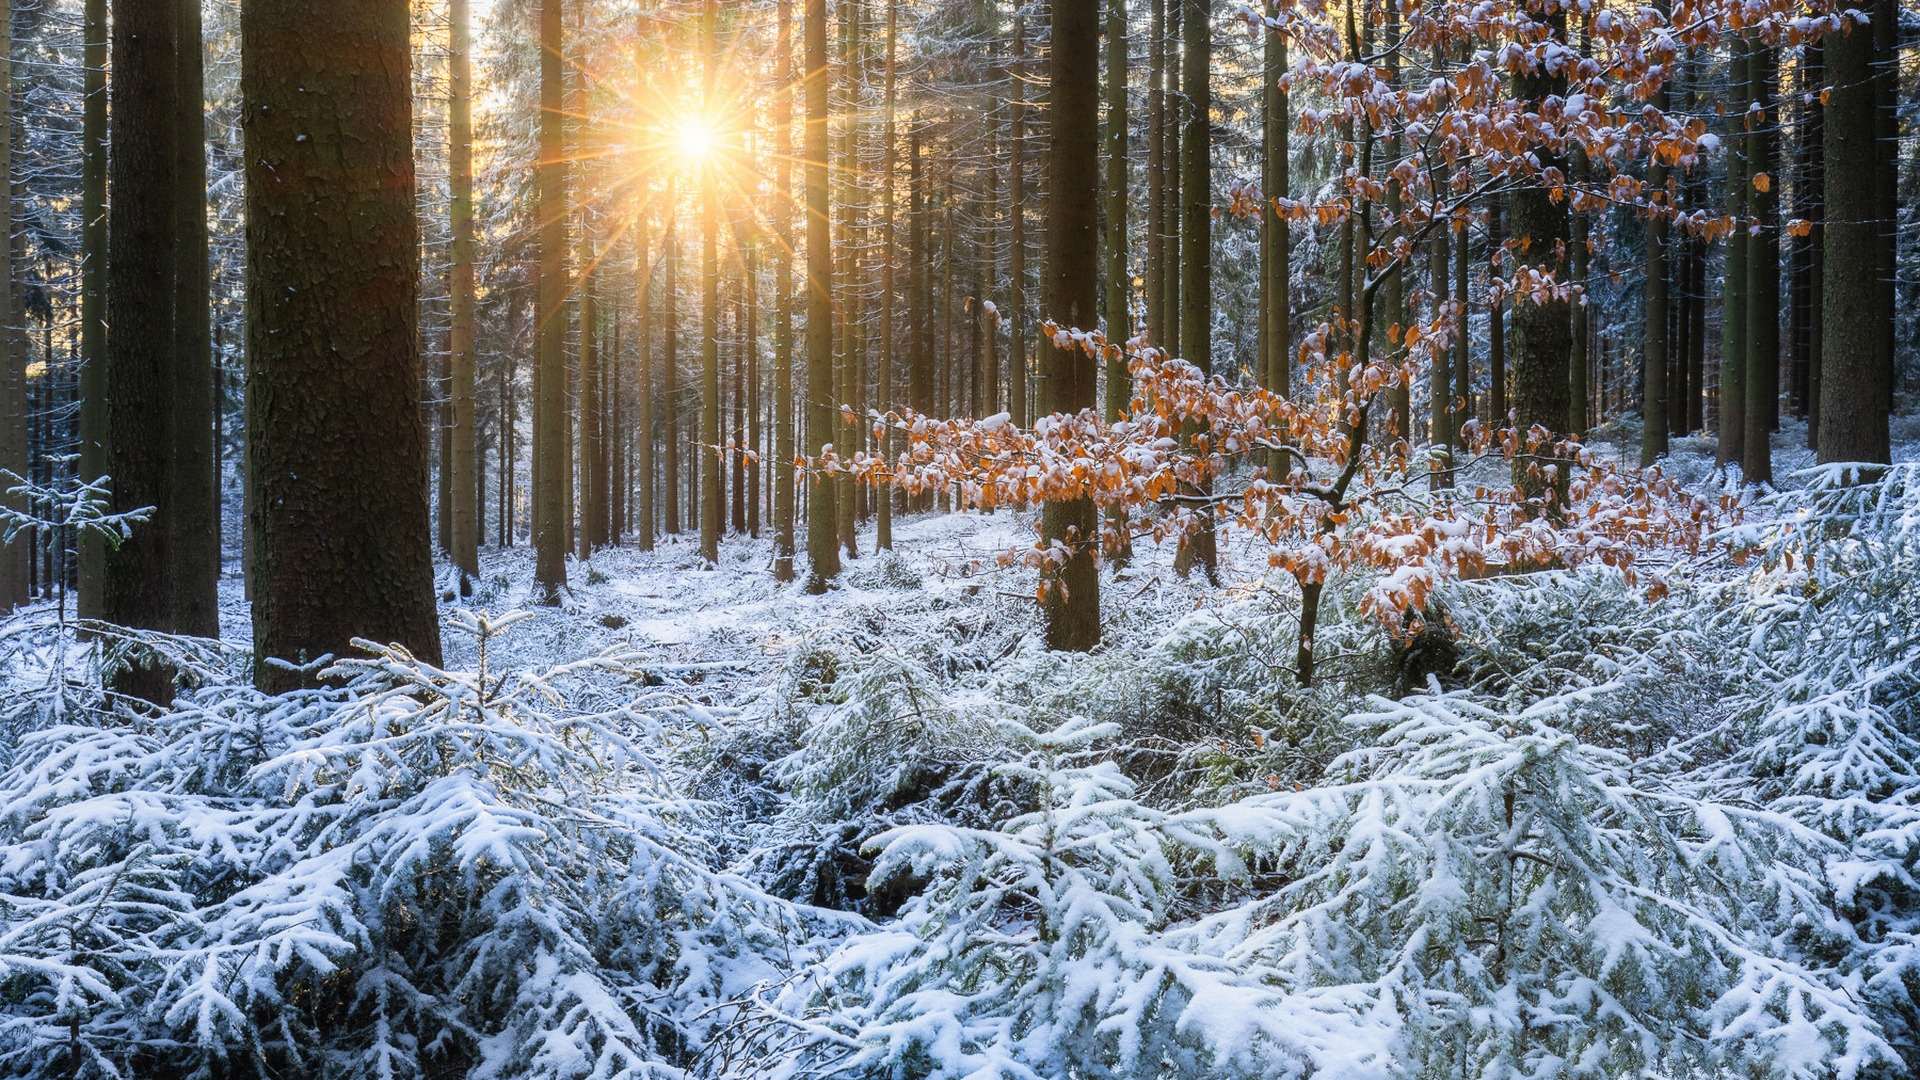 Las, Zima, Drzewa, Śnieg, Promienie słońca